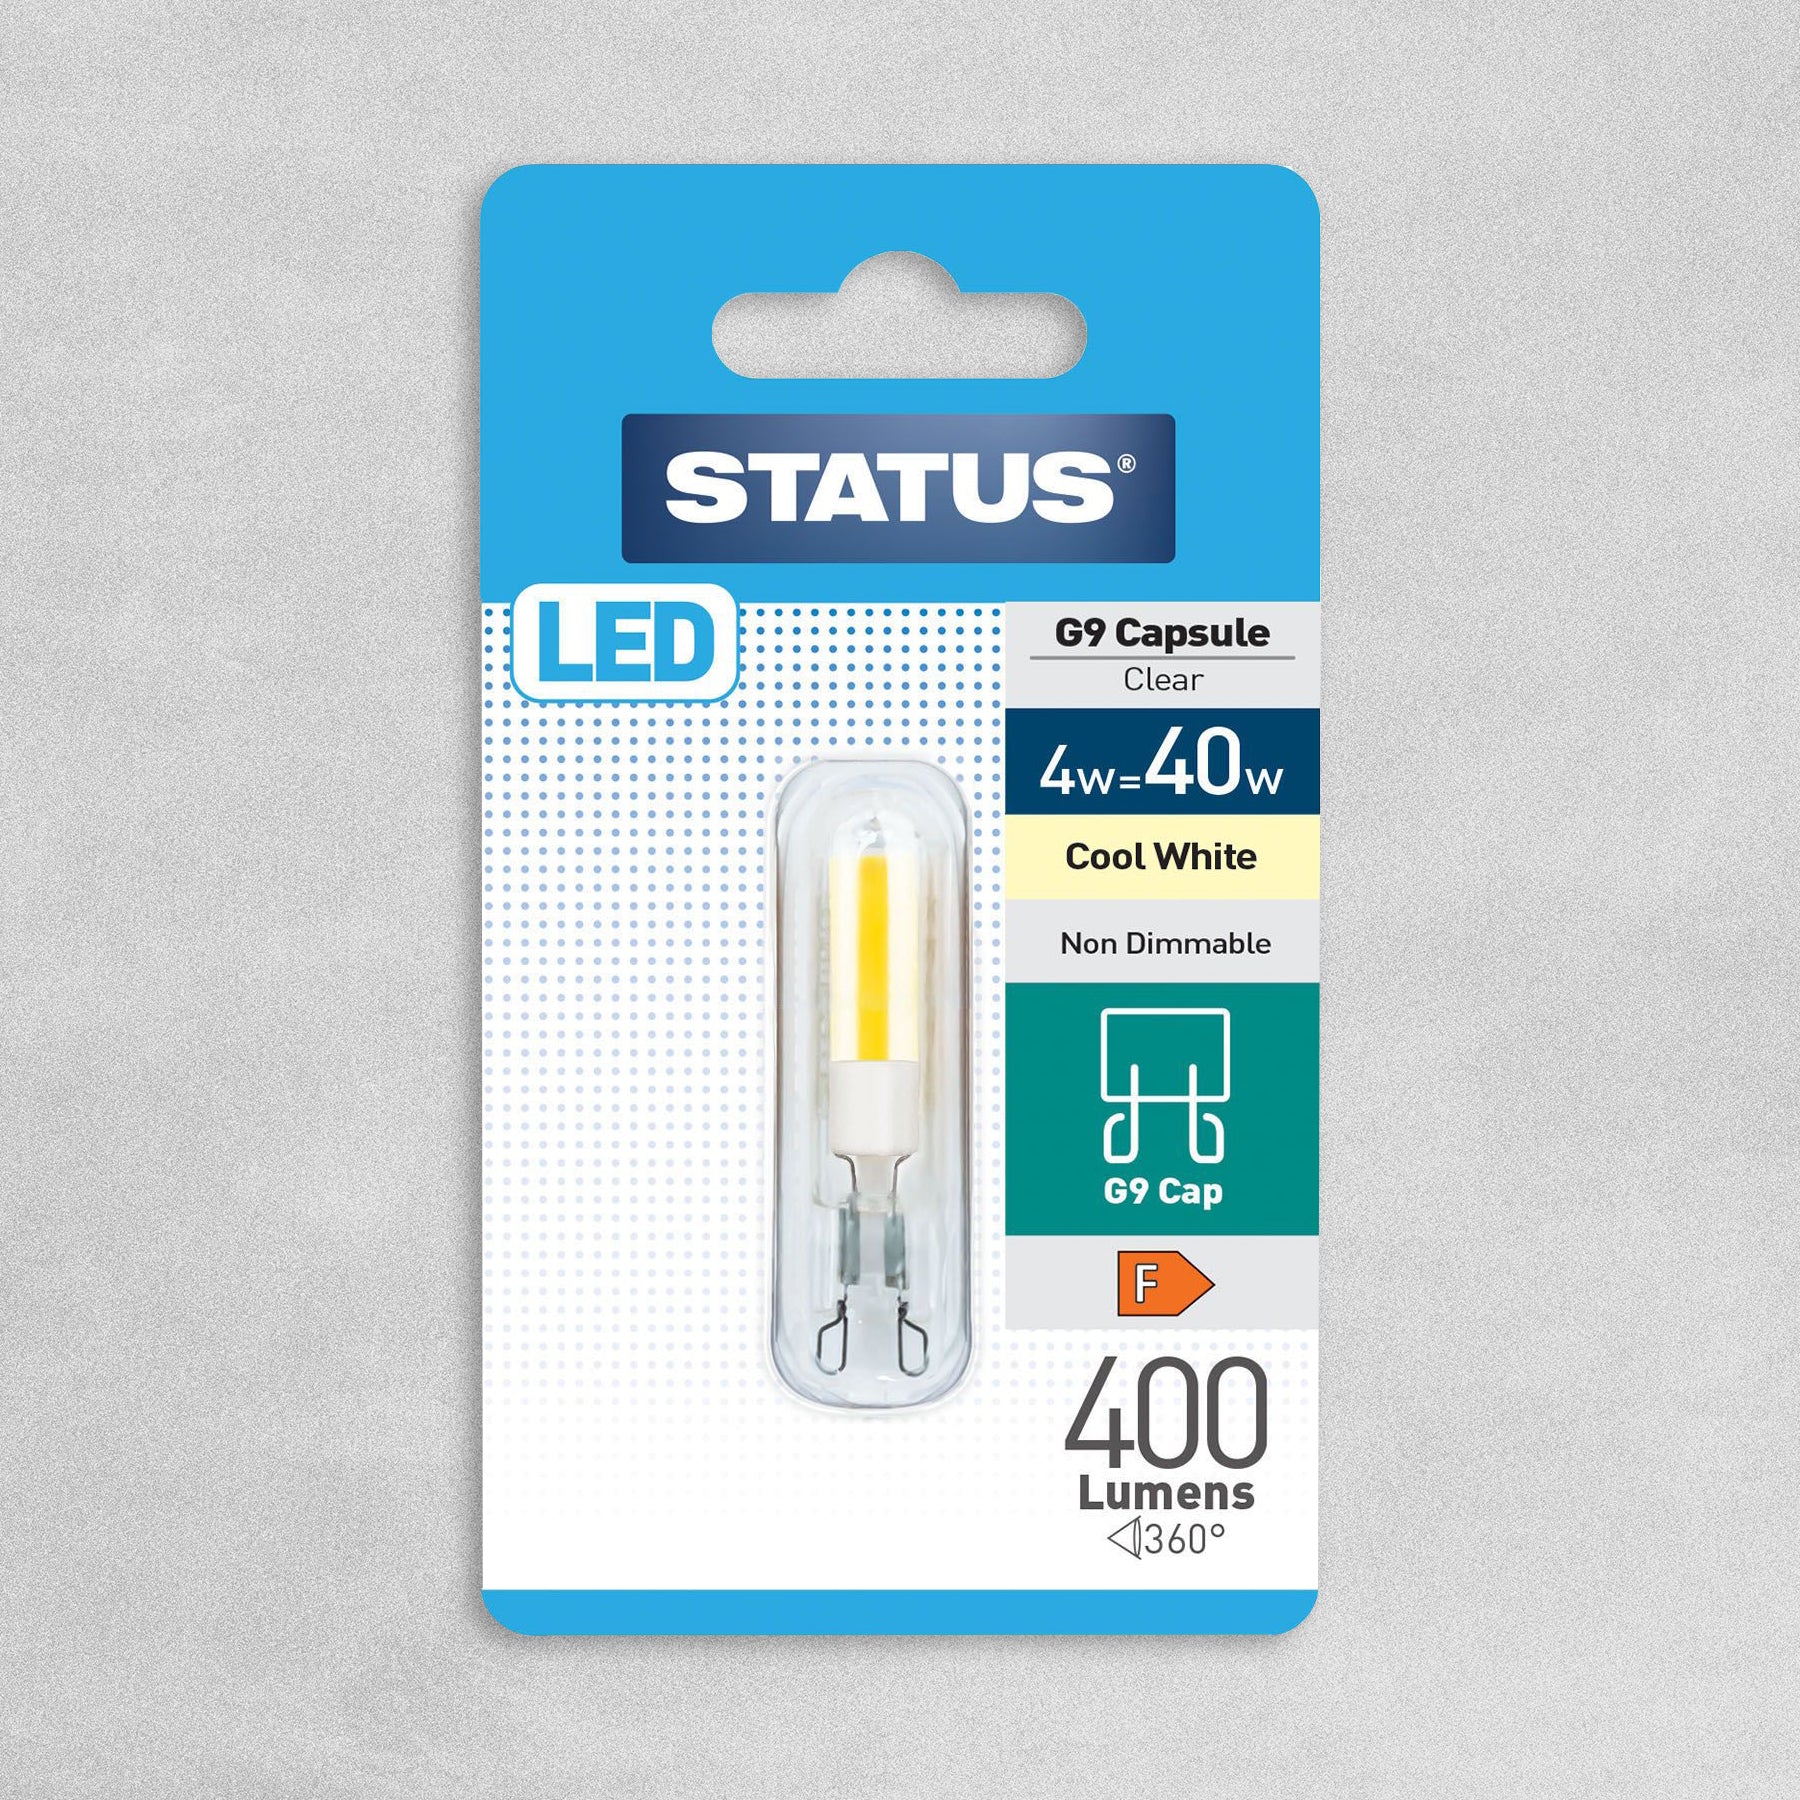 Status LED G9 Capsule Clear Bulb 4w=40w - Cool White